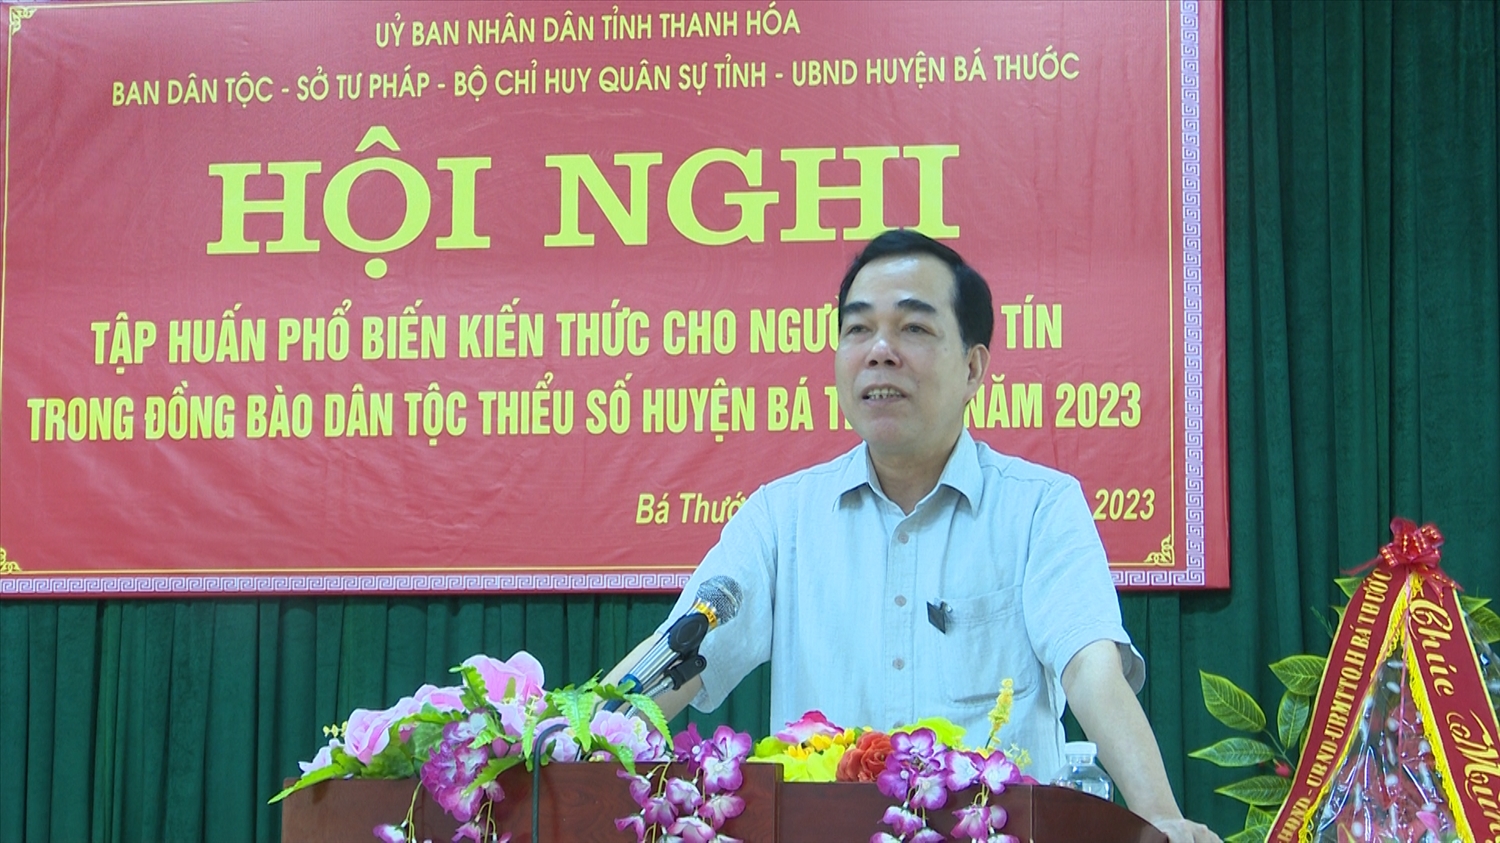 Ông Cầm Bá Tường, Phó trưởng Ban Dân tộc tỉnh Thanh Hóa phát biểu tại hội nghị tập huấn phổ biến kiến thức cho Người có uy tín tại huyện Bá Thước